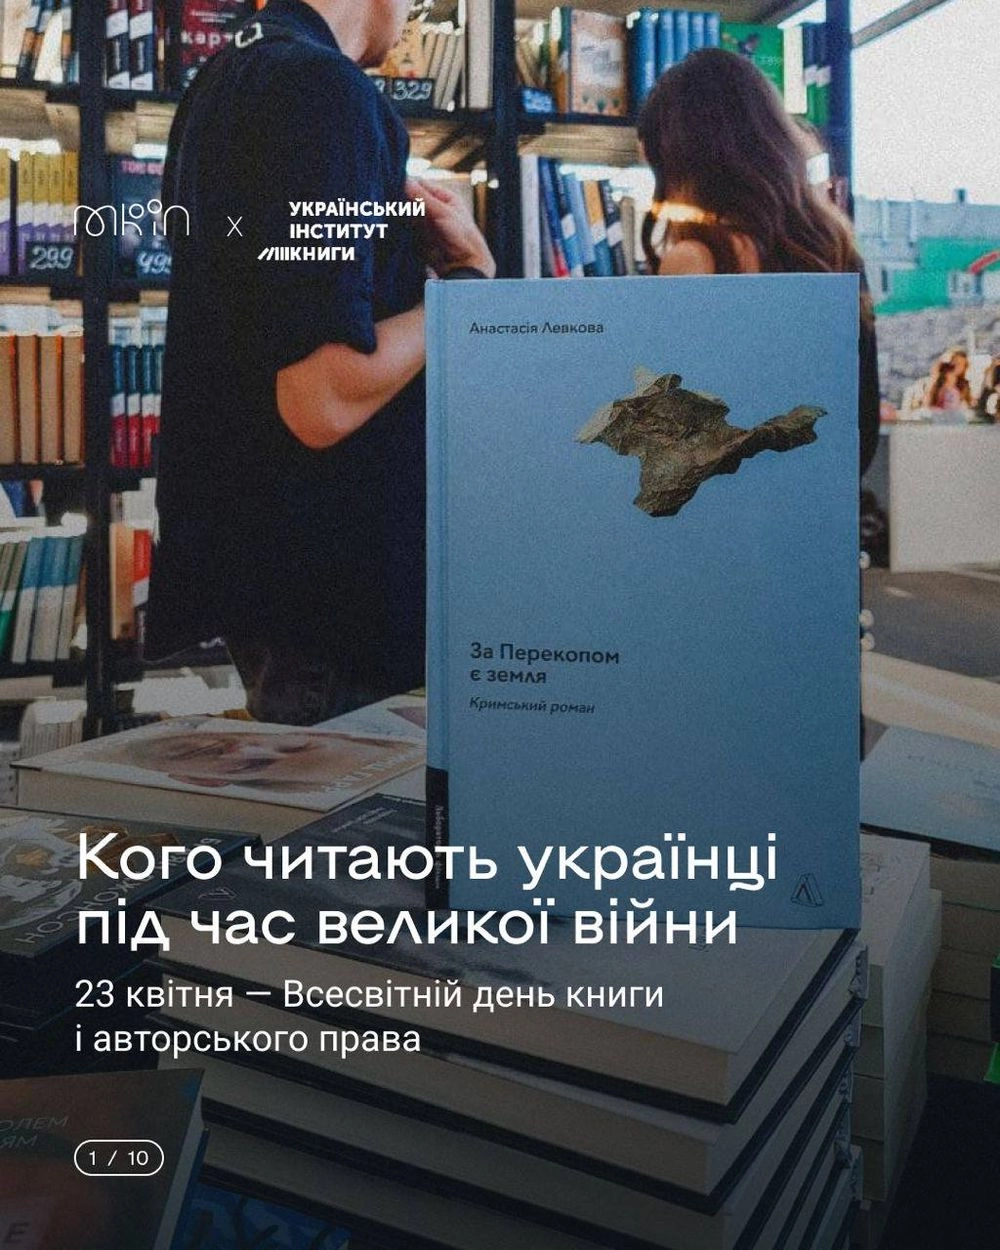 Украинская литература процветает несмотря на войну: 54% читателей выбирают украинские книги